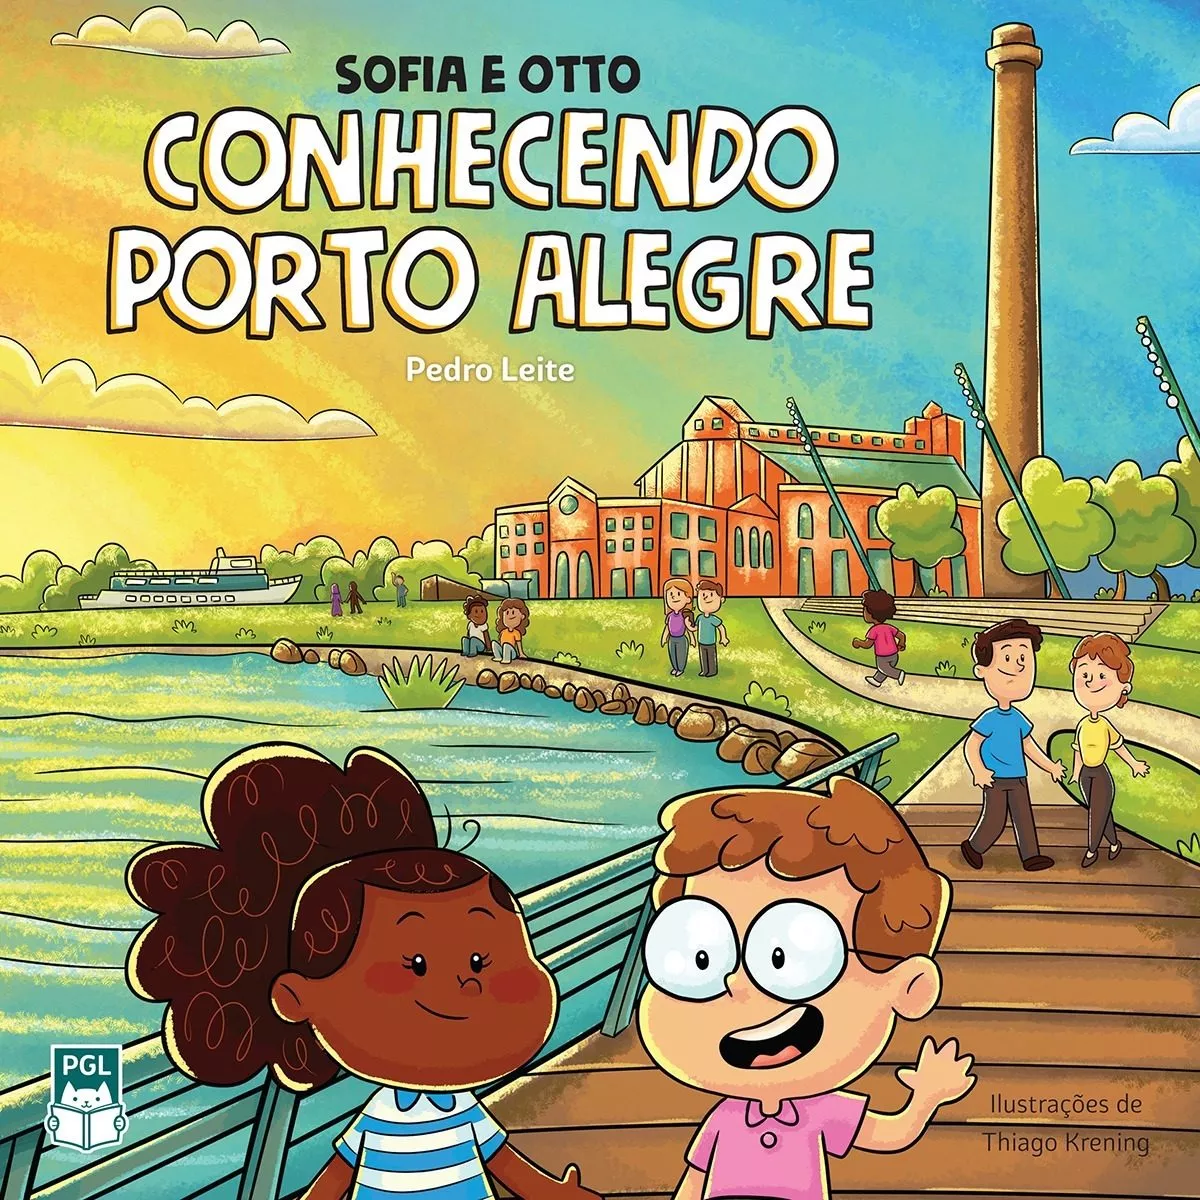 Sofia E Otto Conhecendo Porto Alegre